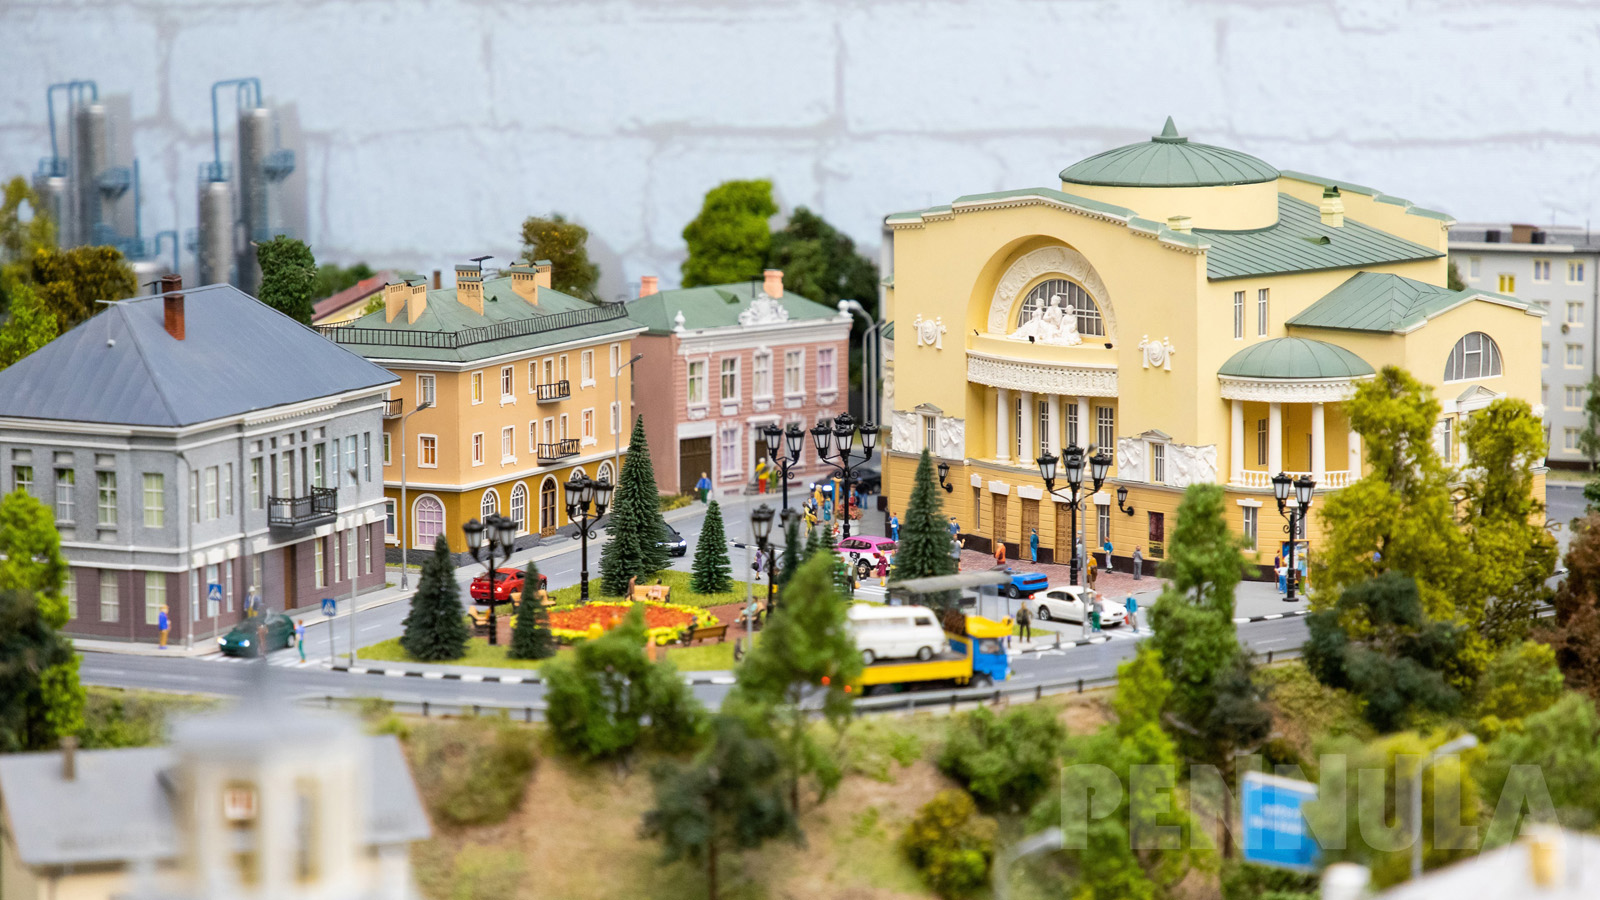 Modelleisenbahn H0 in Russland - Führerstandsmitfahrt im russischen Miniatur Wunderland in Jaroslawl